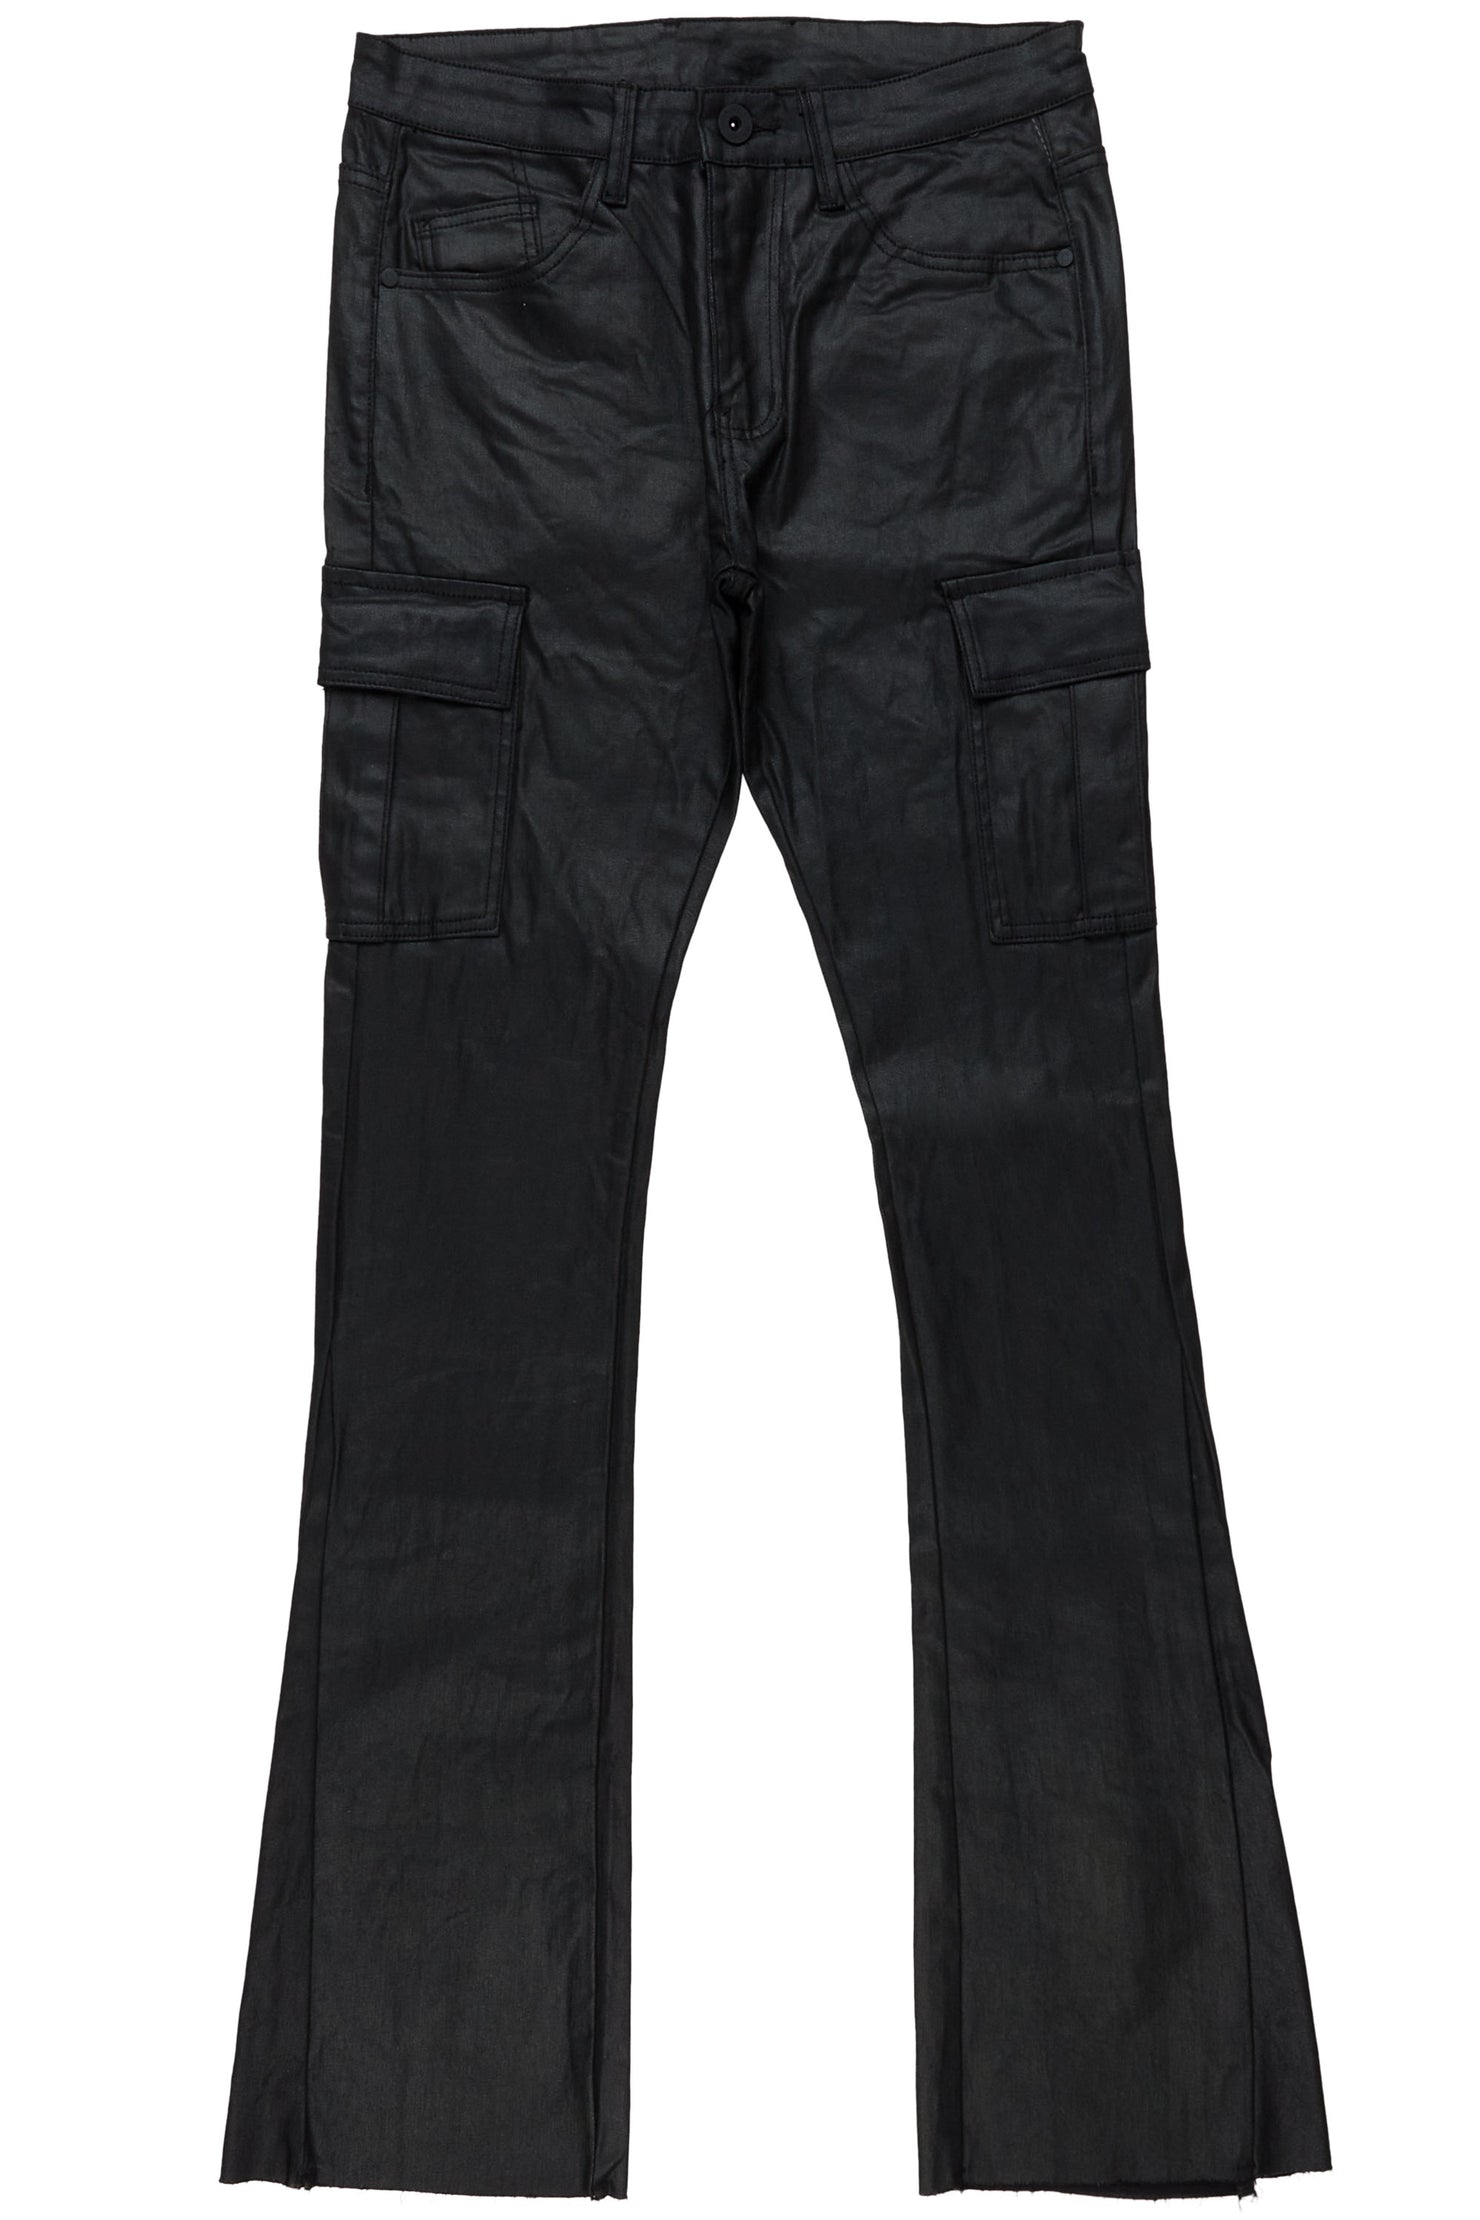 Kooper Black Stacked Flare Jean